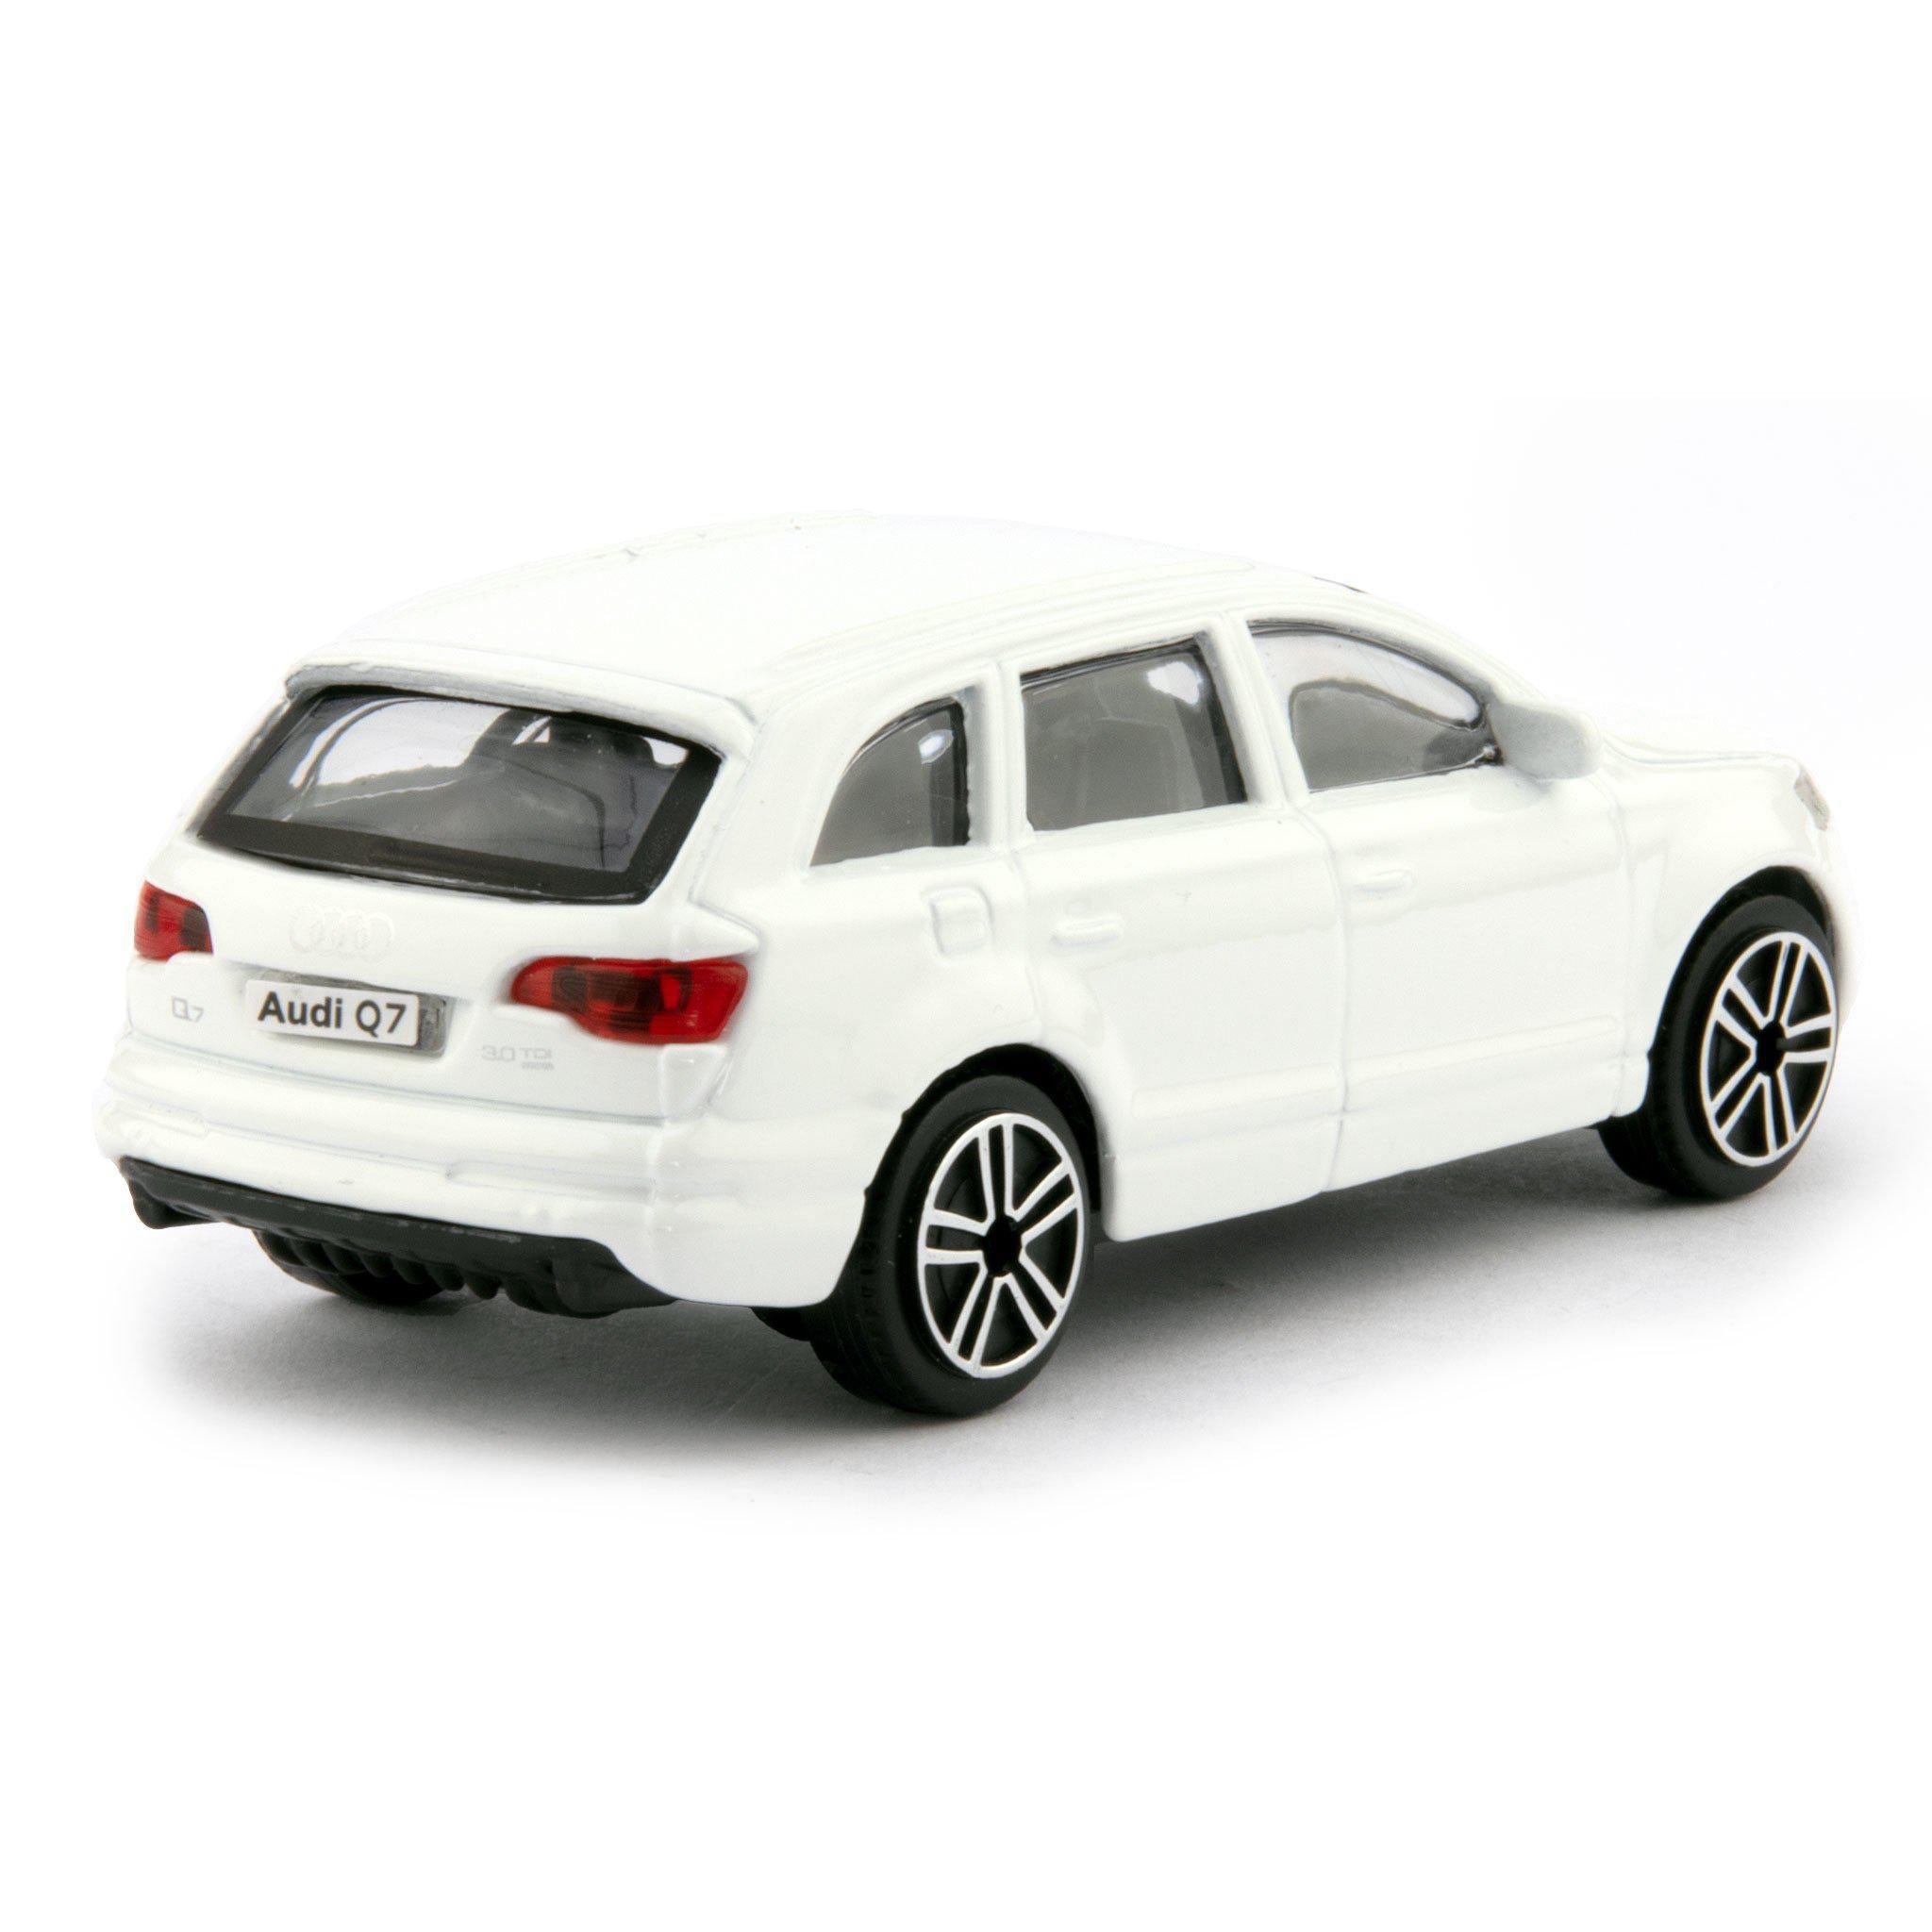 Audi Q7 Diecast Toy Car 2011 white - 1:43 Scale-Bburago-Diecast Model Centre